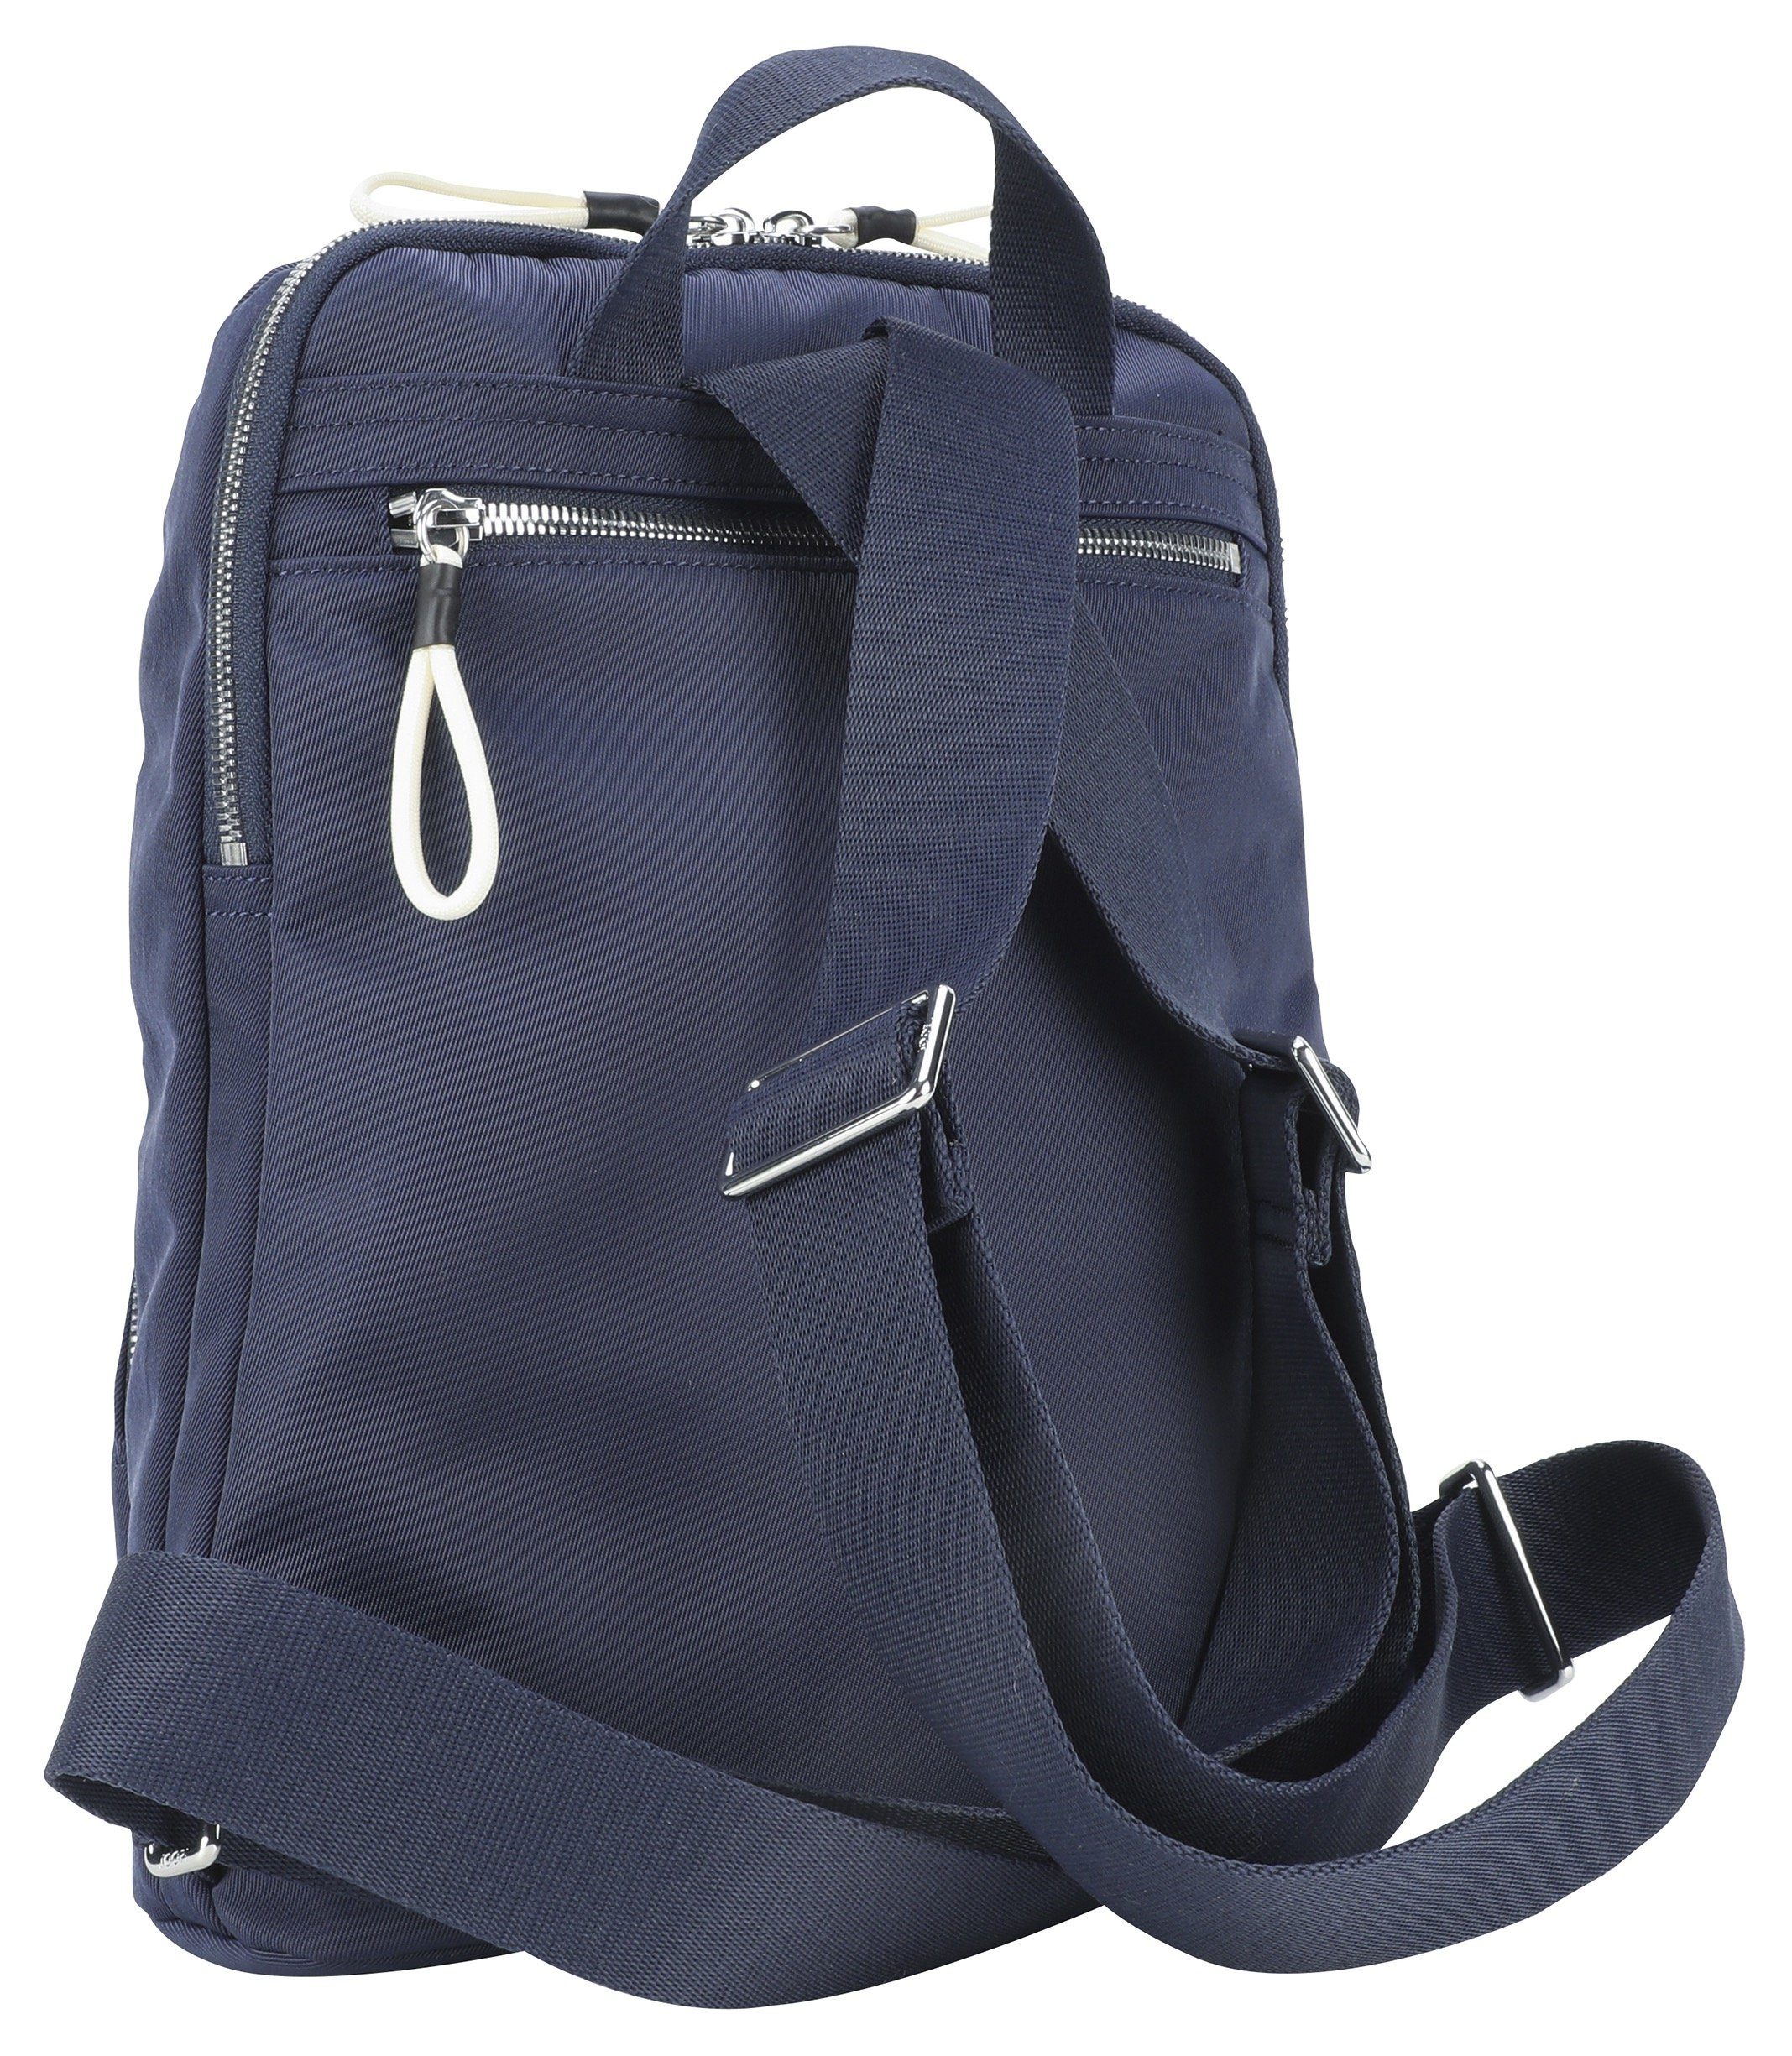 Joop Jeans Cityrucksack giocoso nivia dunkelblau im Design backpack praktischen mvz